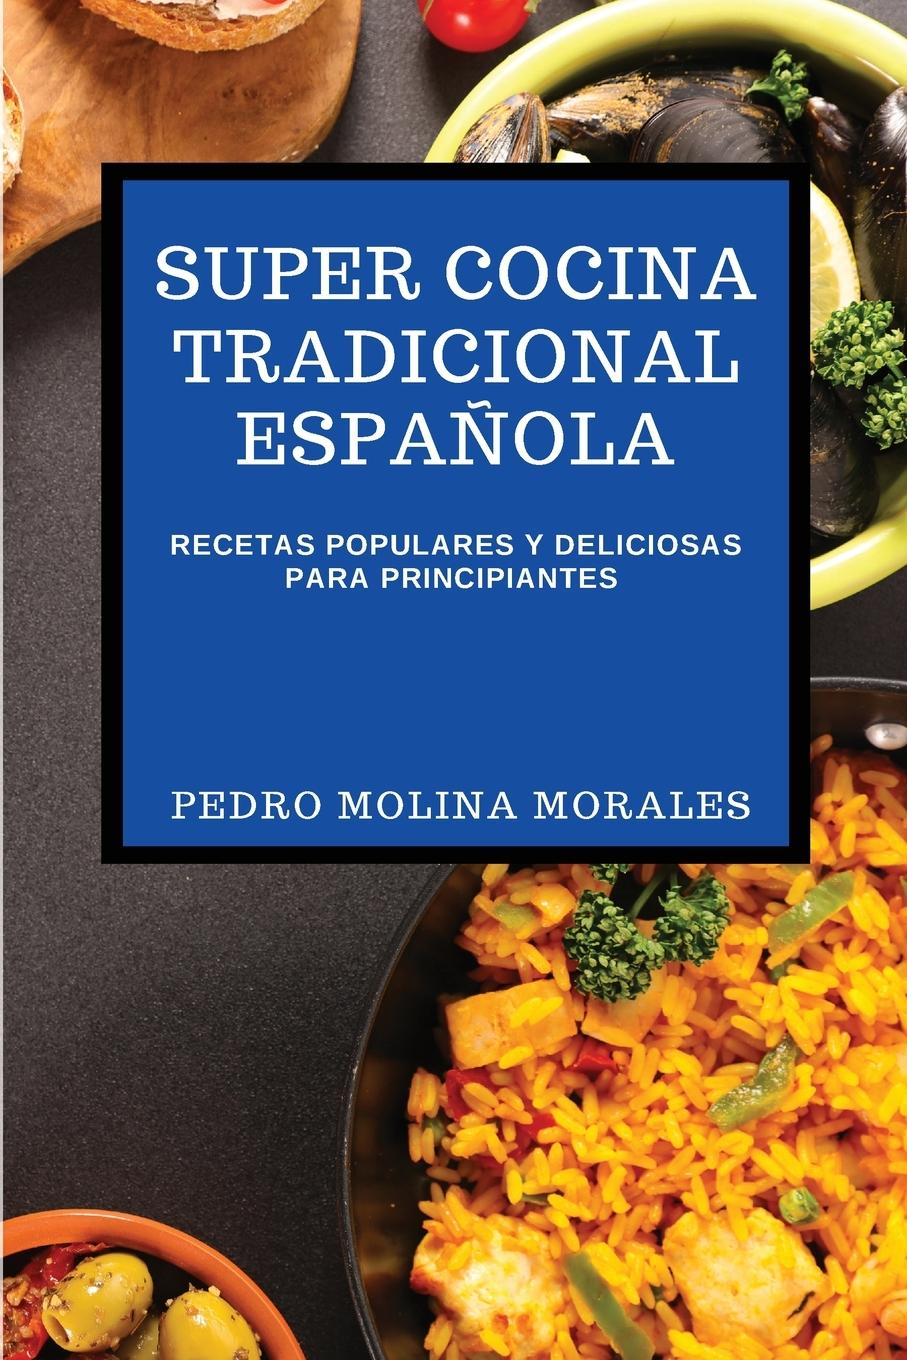 Book Super Cocina Tradicional Espanola 